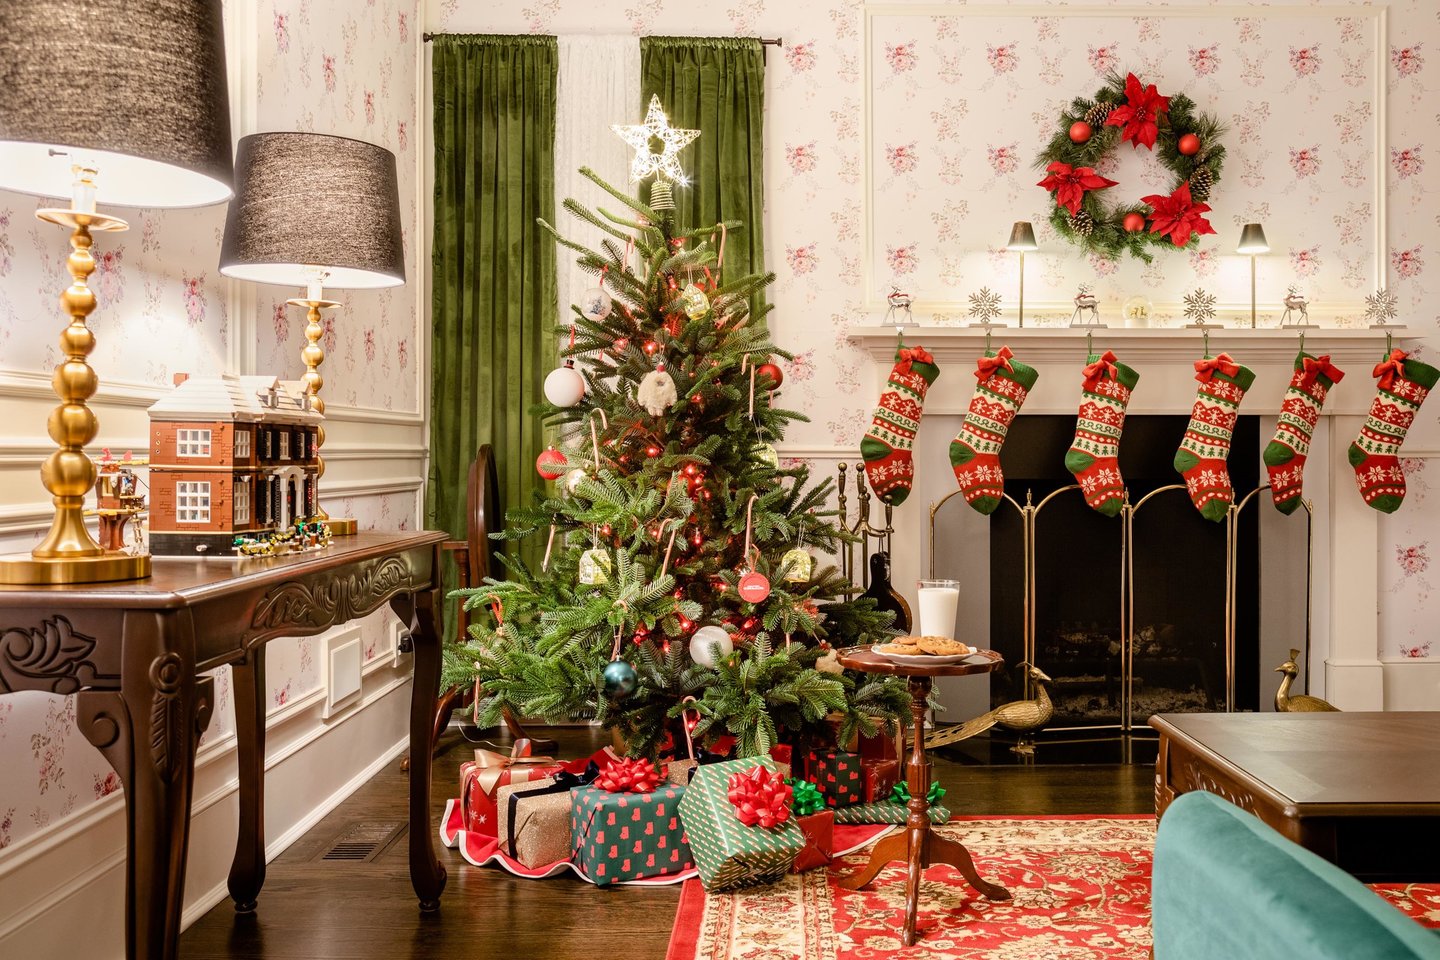 Per Kalėdų atostogas buvo galima apsistoti tikrame „Vieno namuose“ name, o kad įspūdžiai būtų dar nuostabesni, čia buvo palikti ir ne vieni spąstai, laukiantys nuomininkų.